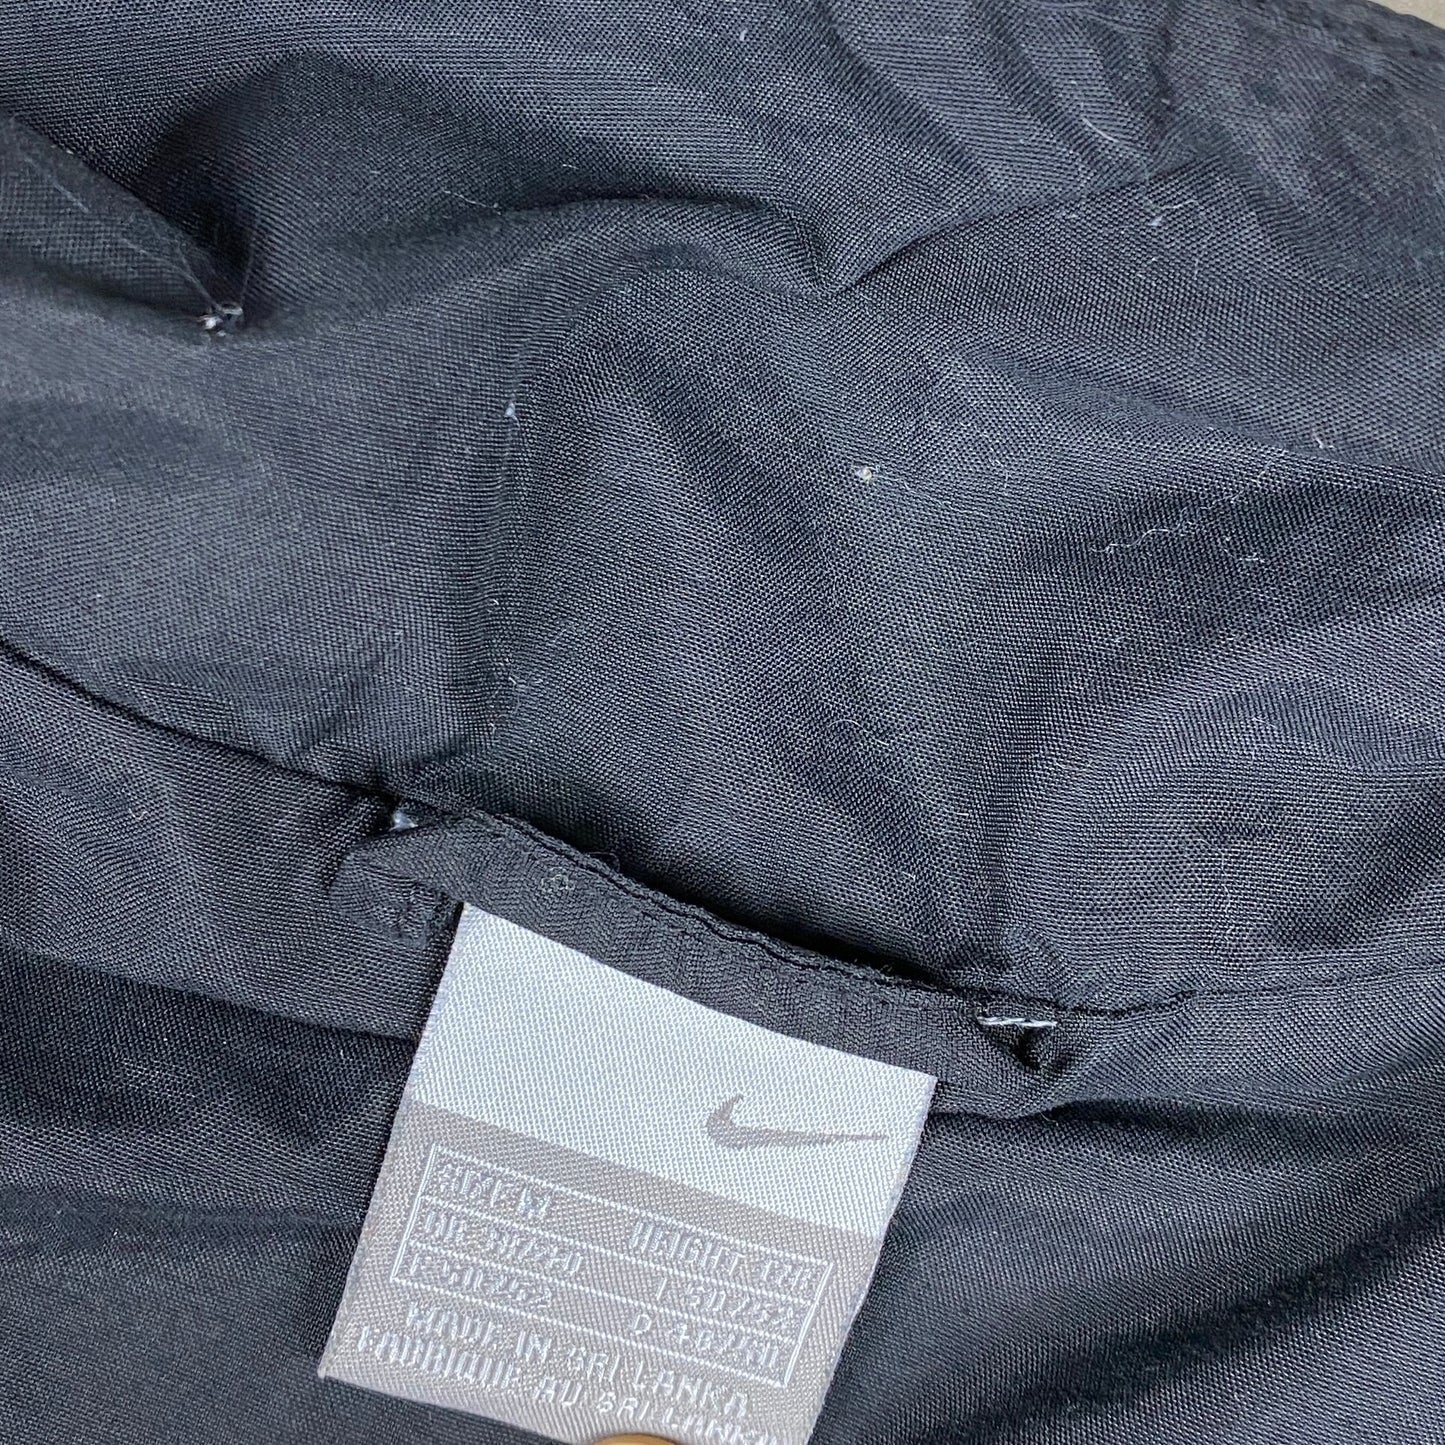 Nike track jacket (M)